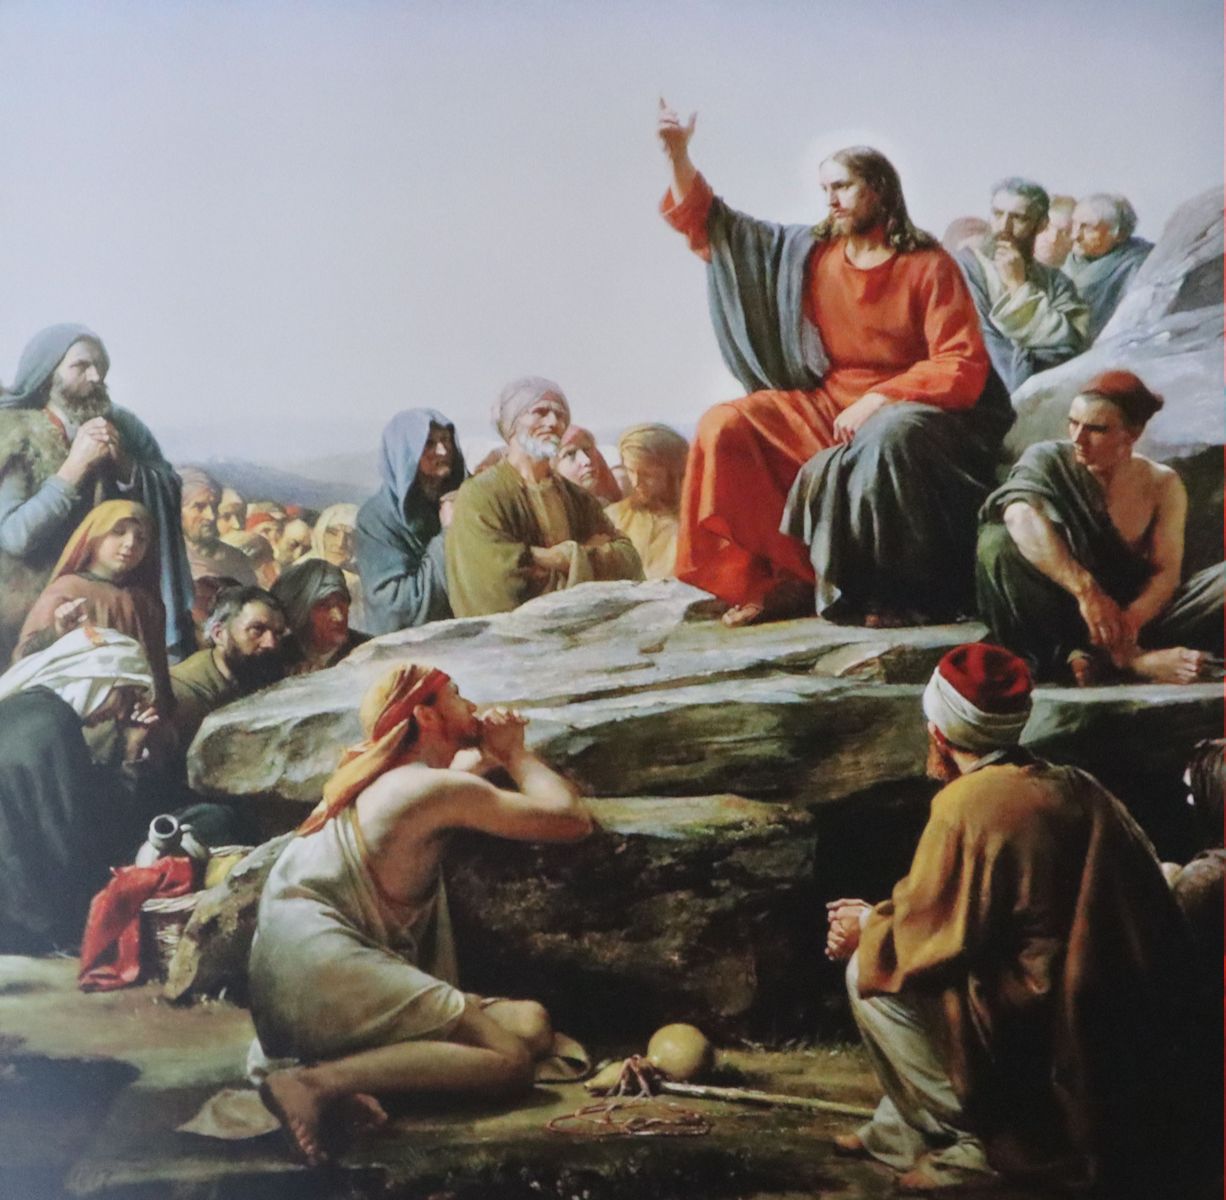 Carl Heinrich Bloch: Jesus bei der Bergpredigt, 1875, Original in der Kapelle des Schlosses Frederiksborg in Hillerød auf Seeland in Dänemark, Kopie in der Kathedrale in Ripatransone in den Marken